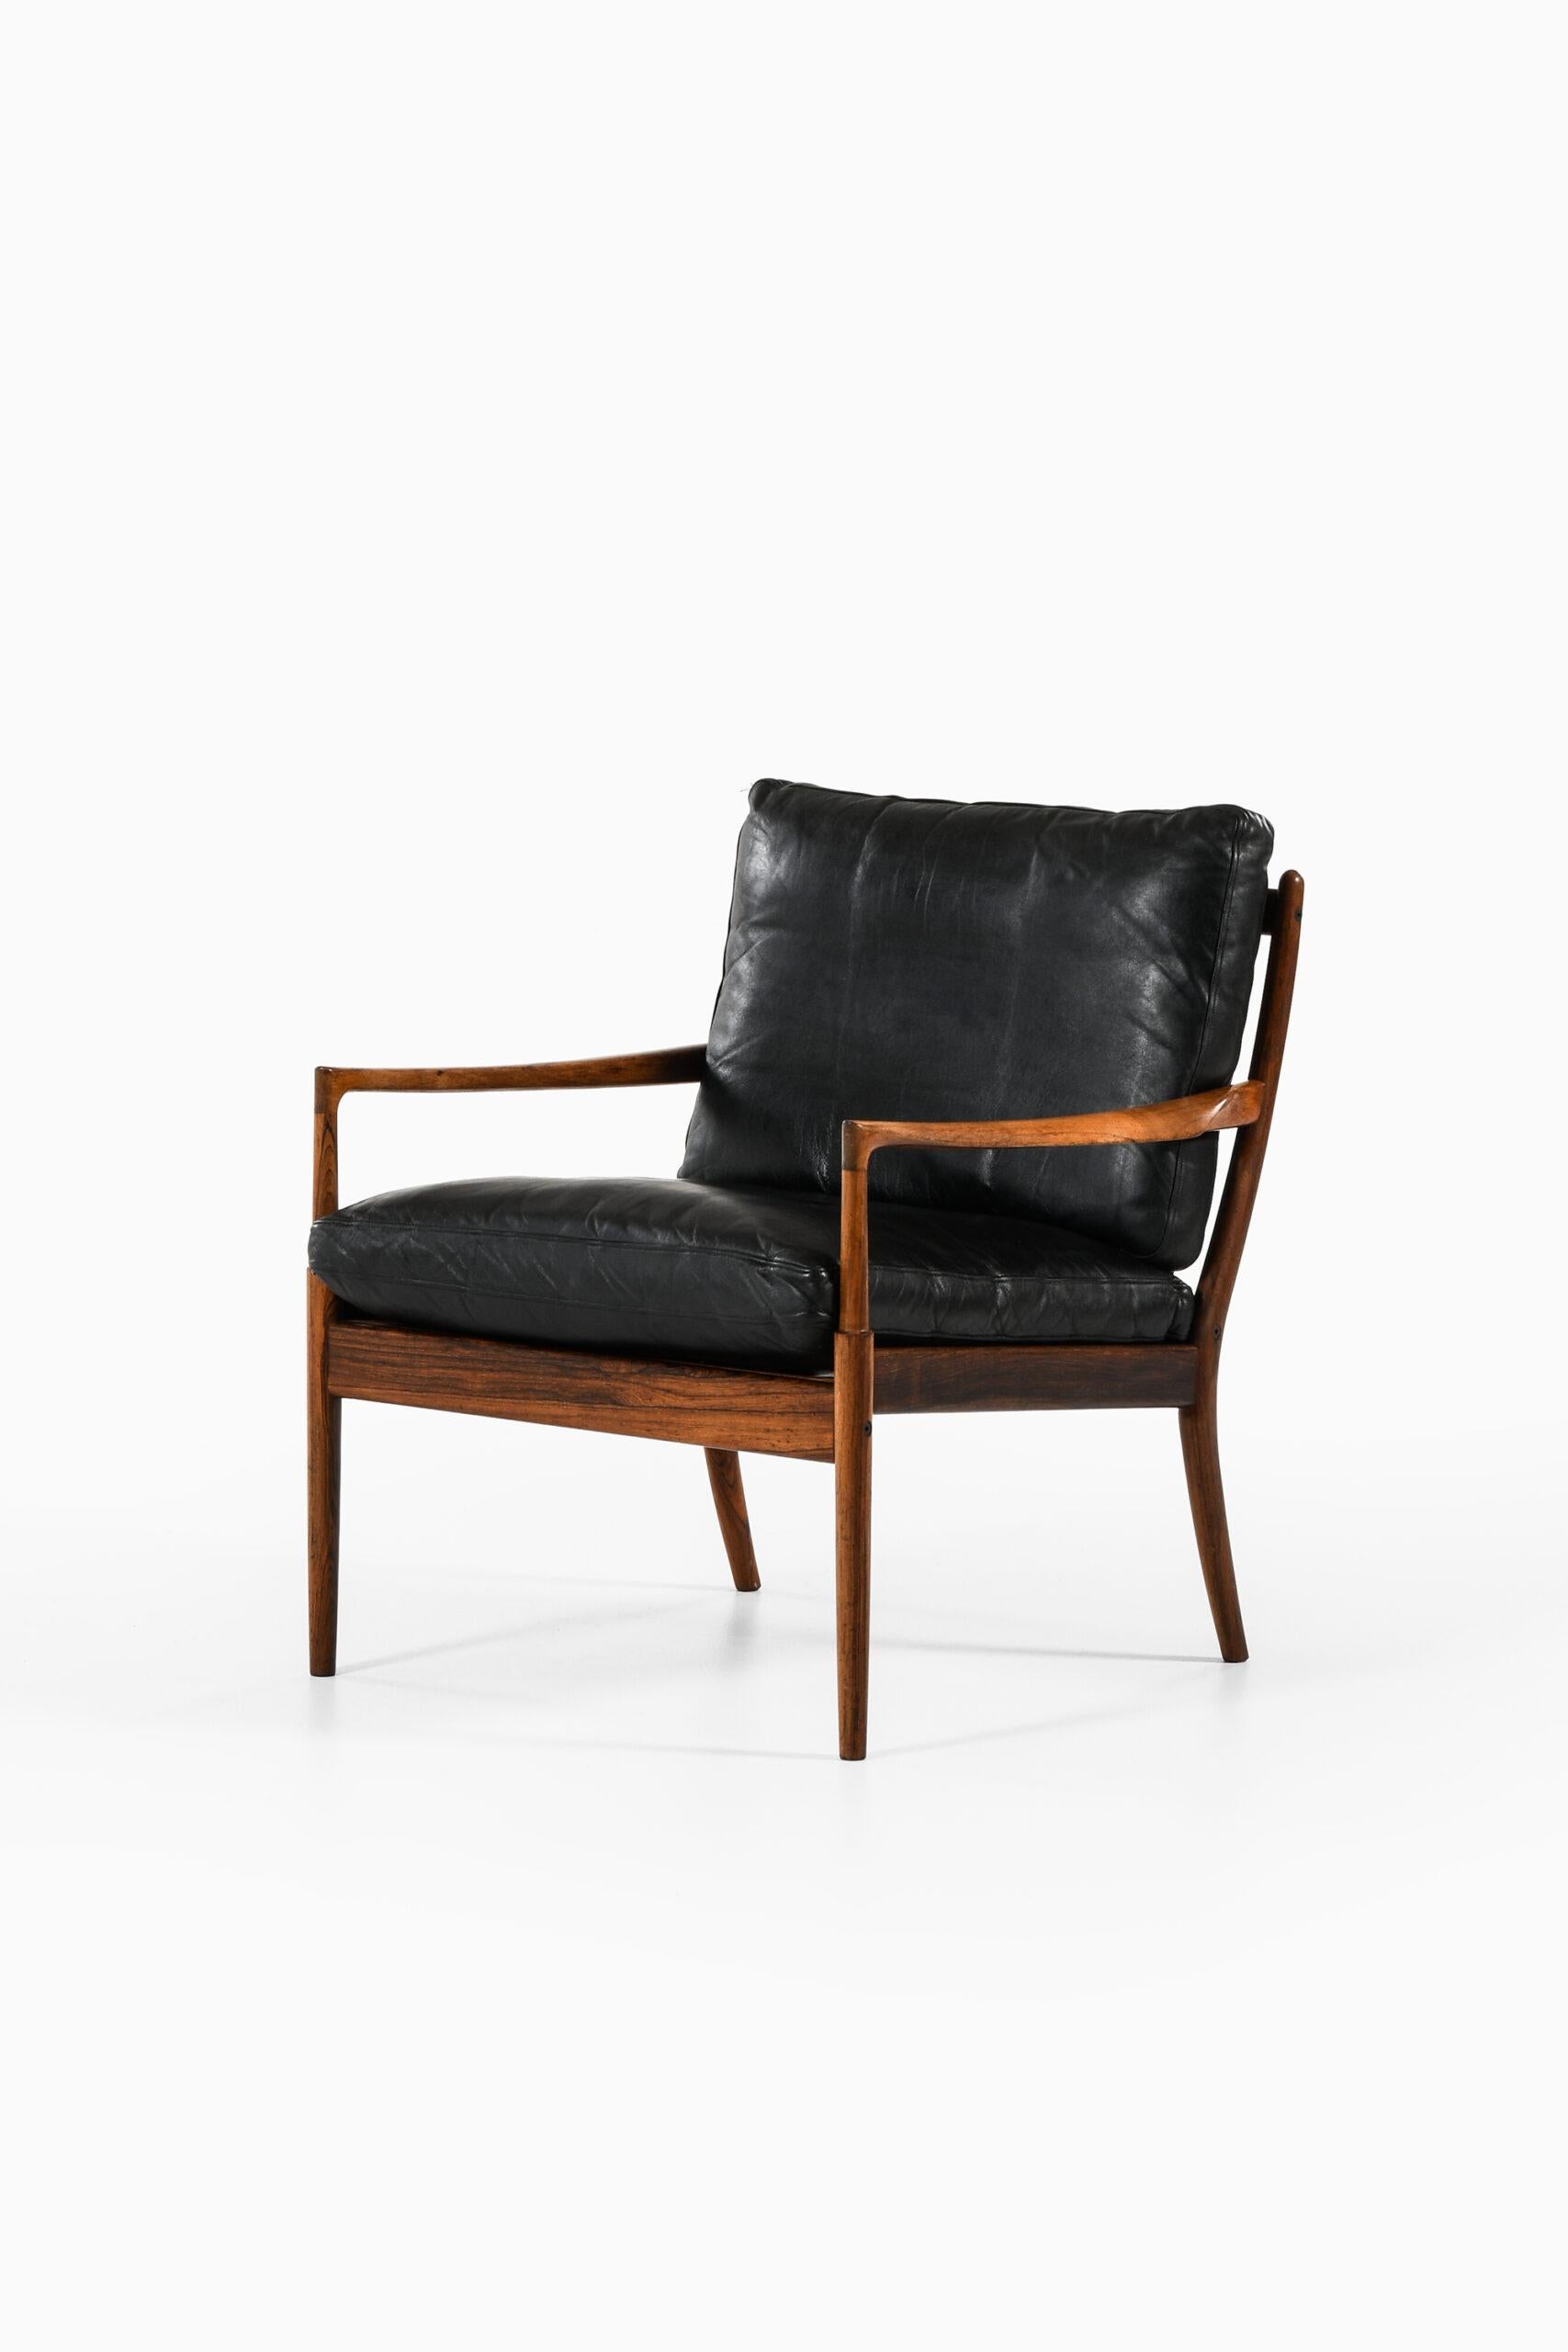 Seltener Sessel Modell Samsö, entworfen von Ib Kofod-Larsen. Produziert von OPE in Schweden.